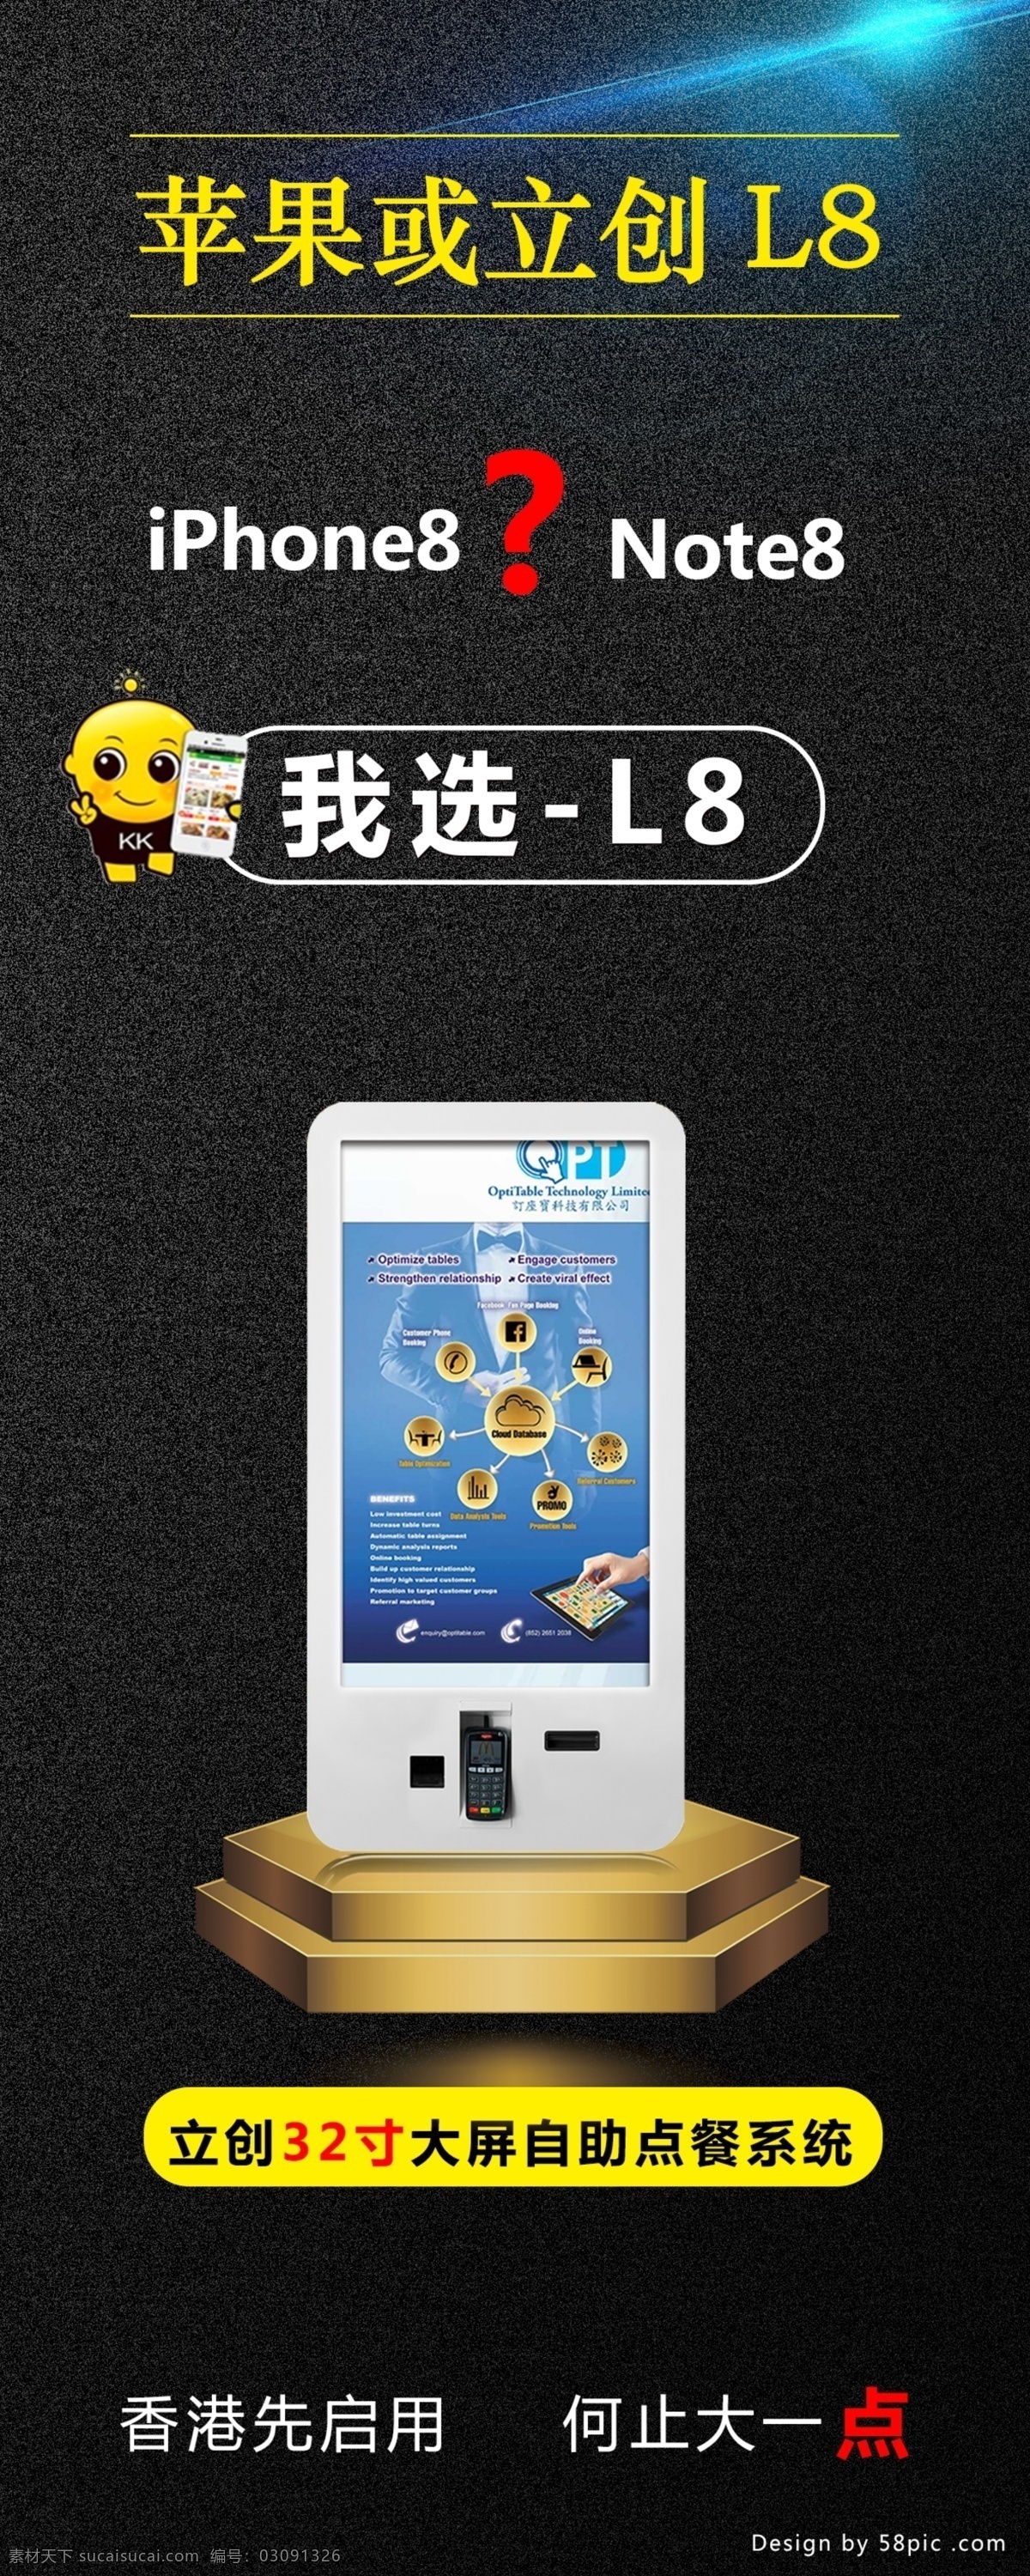 大型 点 餐 软件 宣传海报 点餐系统软件 大型点餐机 系统 iphone8 note8 iphonex 黑色背景海报